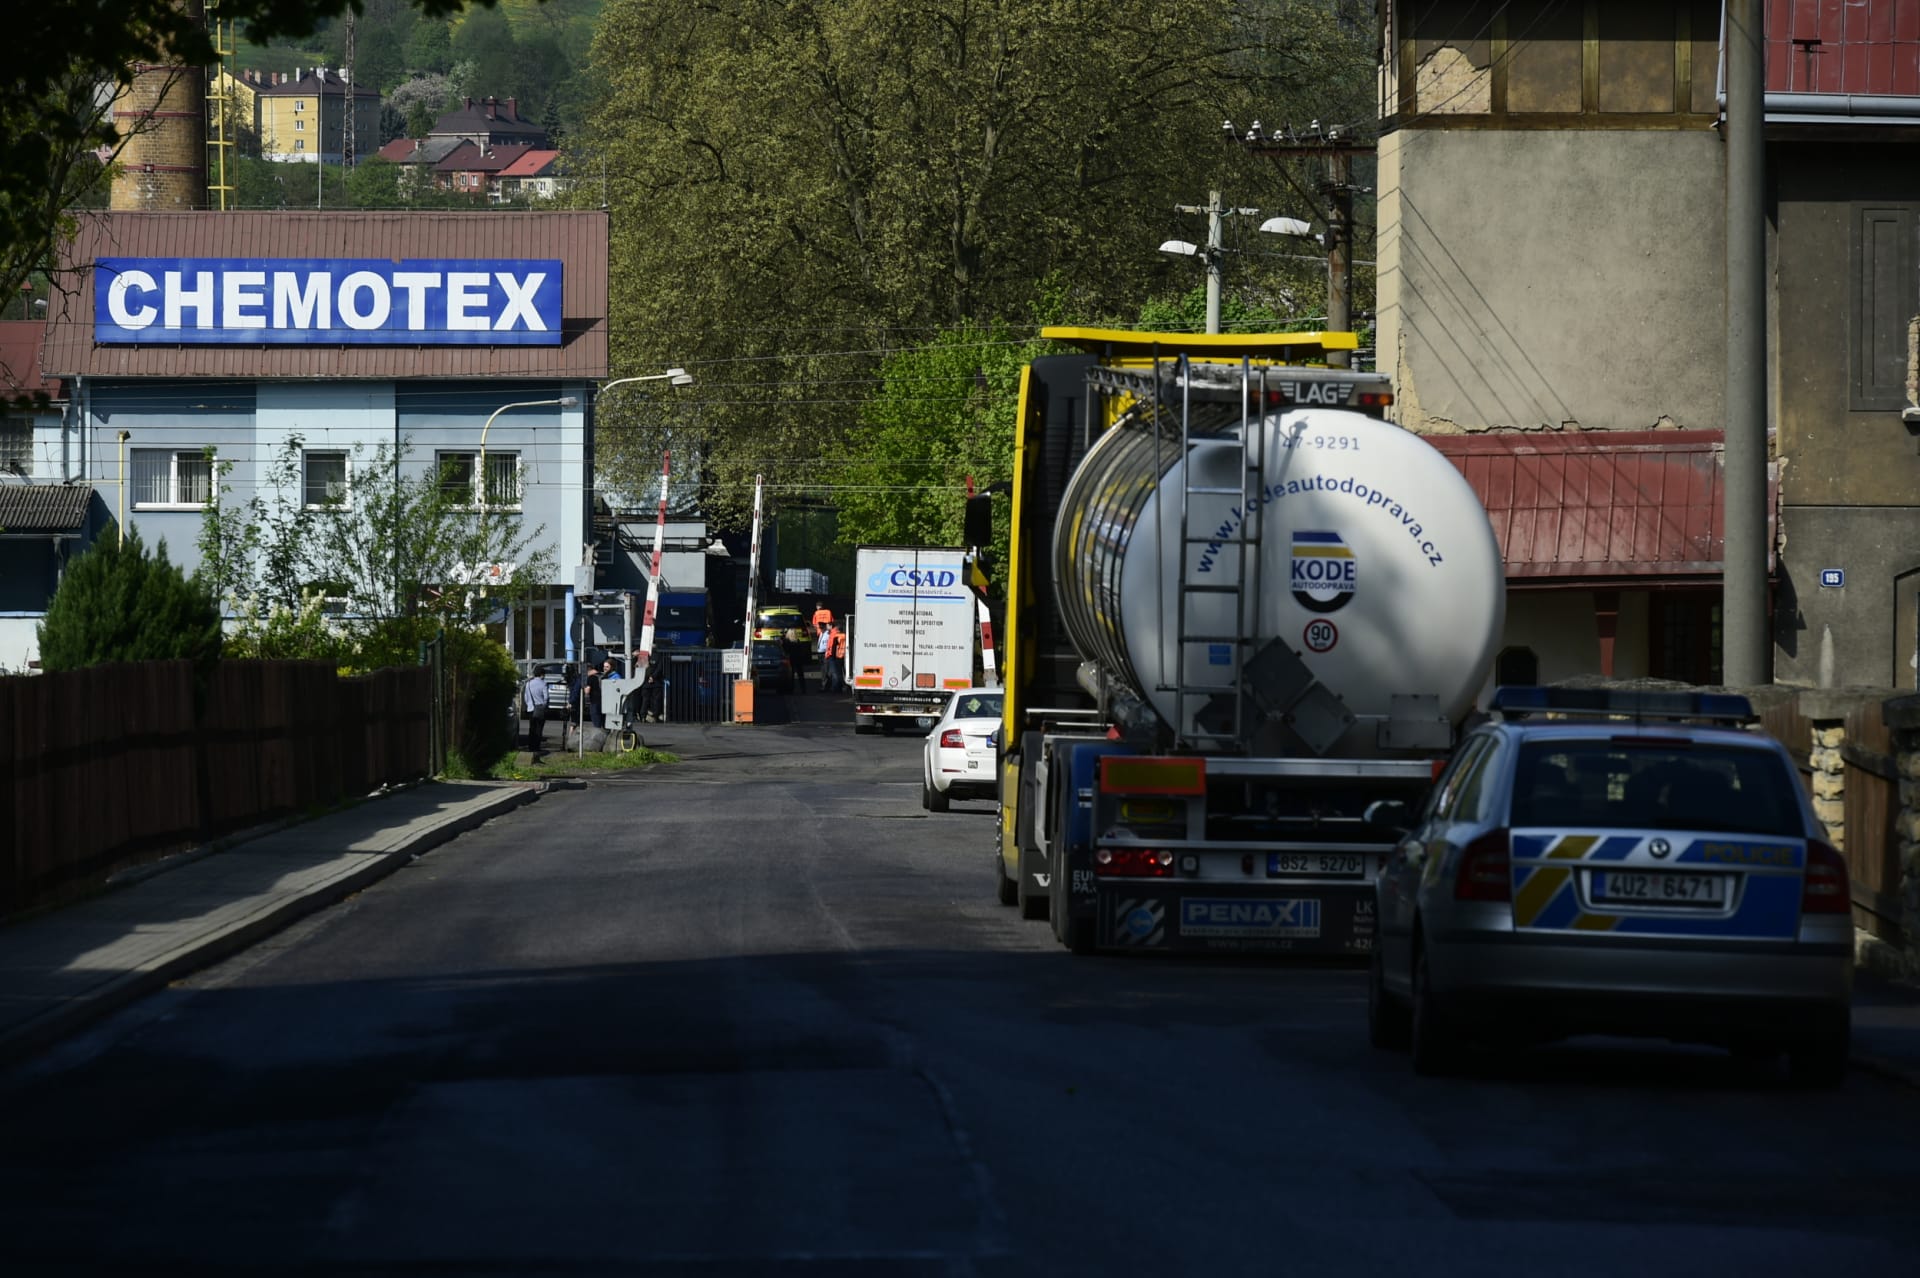 Nehoda ve firmě Chemotex v Děčíně stála v dubnu 2018 život dva lidi.